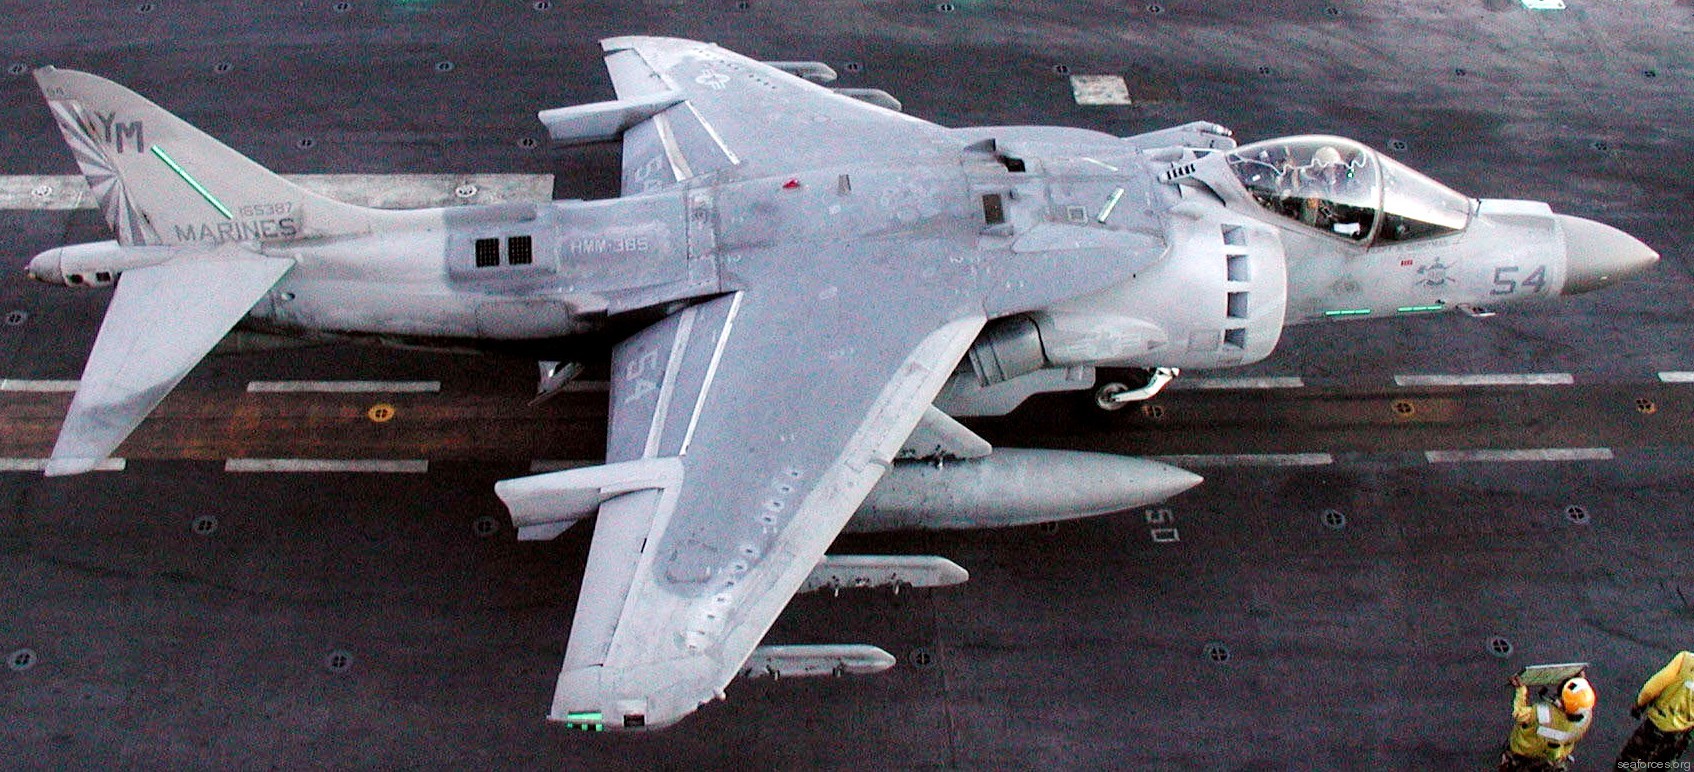 vma-223 bulldogs av-8b harrier marine attack squadron usmc 68